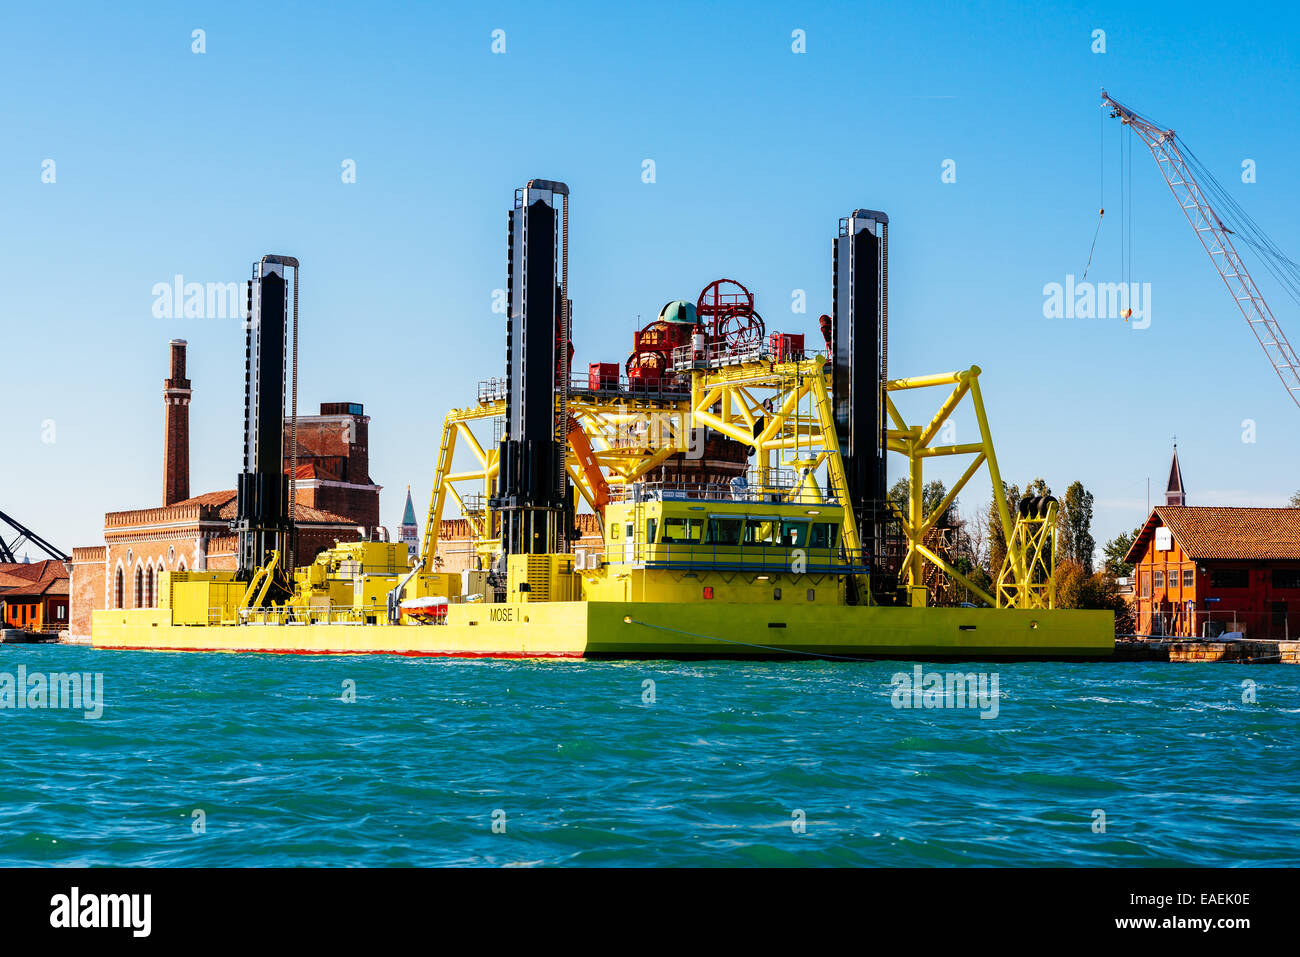 Hubschiff Mose, genannt nach Projekt einrichten Tore vorübergehend isolieren der venezianischen Lago Stockfoto